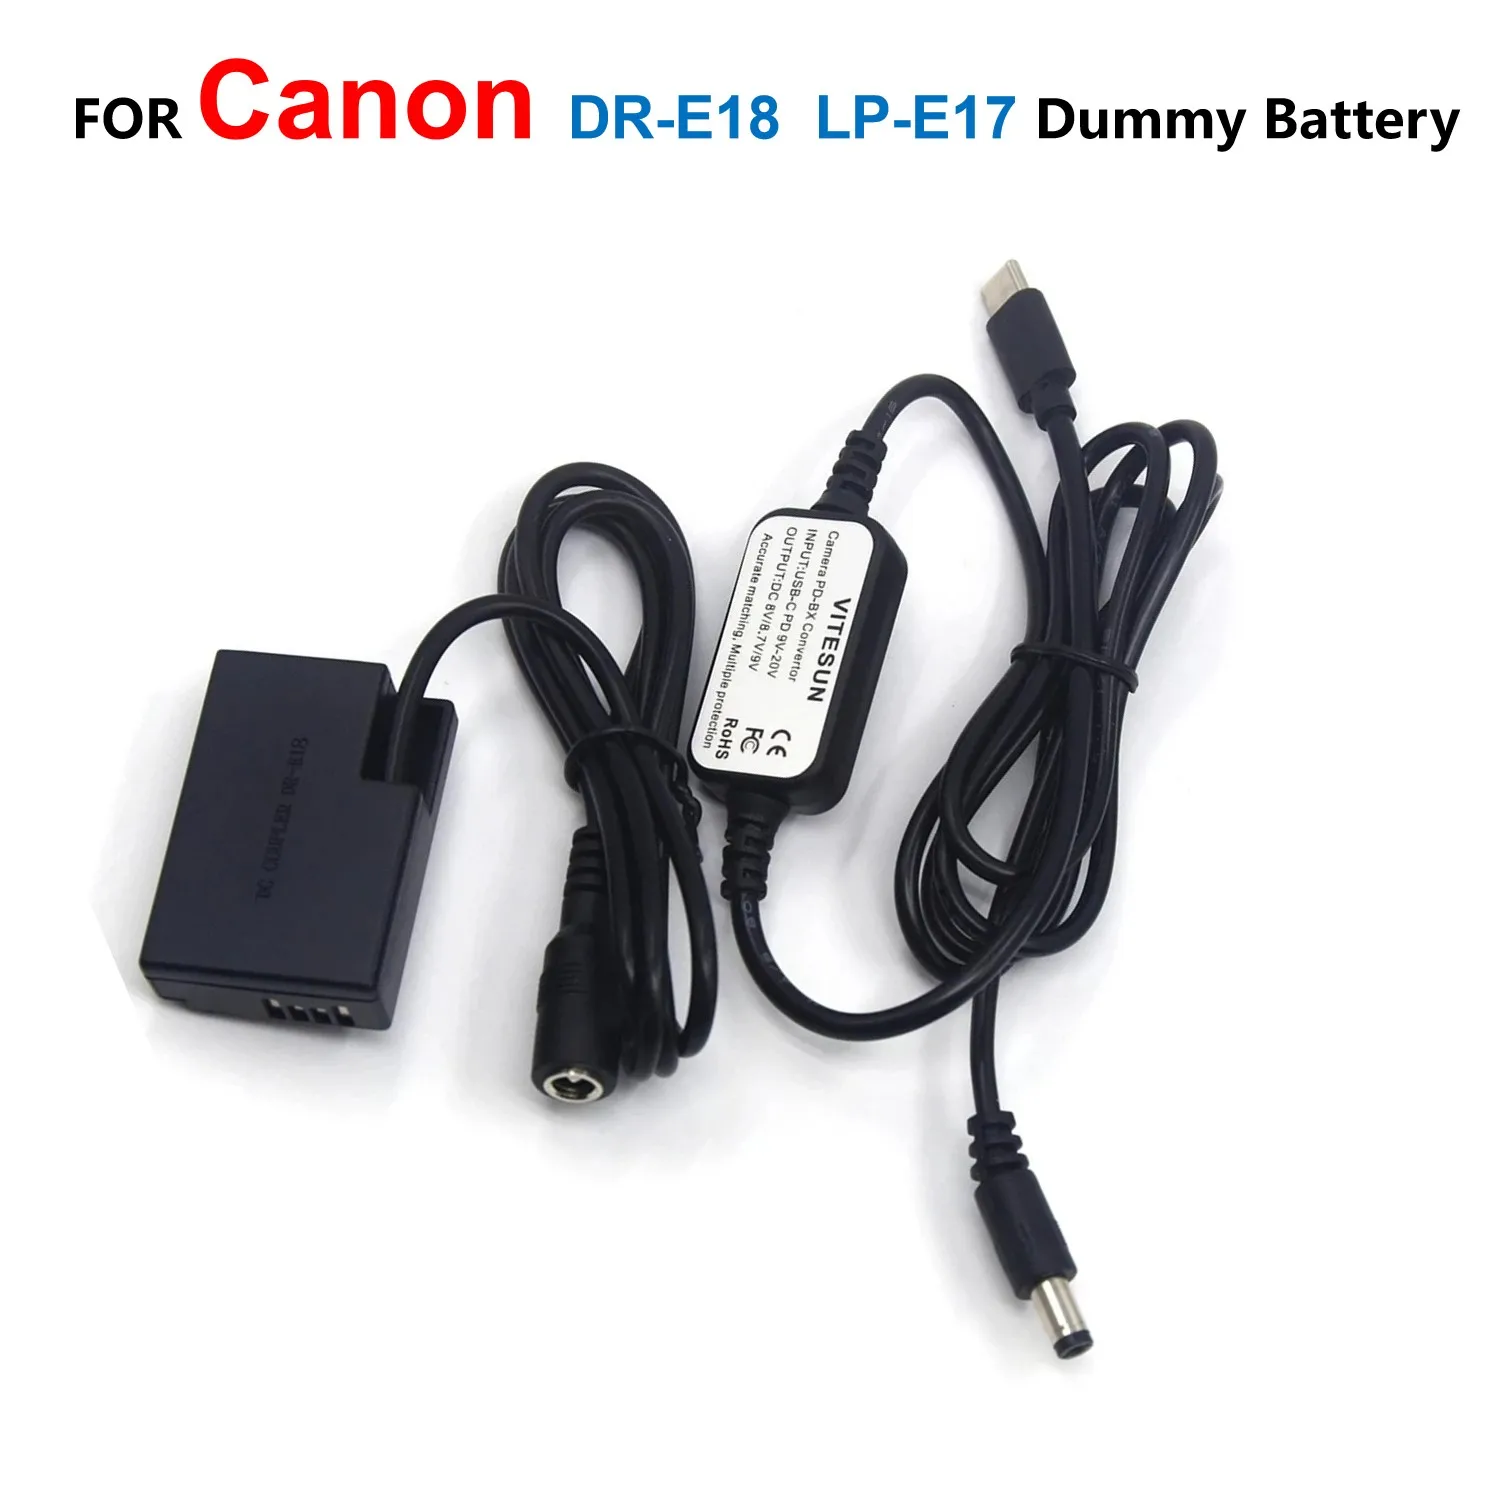 

LP-E17 DR-E18 Dummy Battery USB Type C USB-PD Converter To DC Cable For Canon EOS 750D Kiss X8i T6i 760D T6S 77D 800D 200D